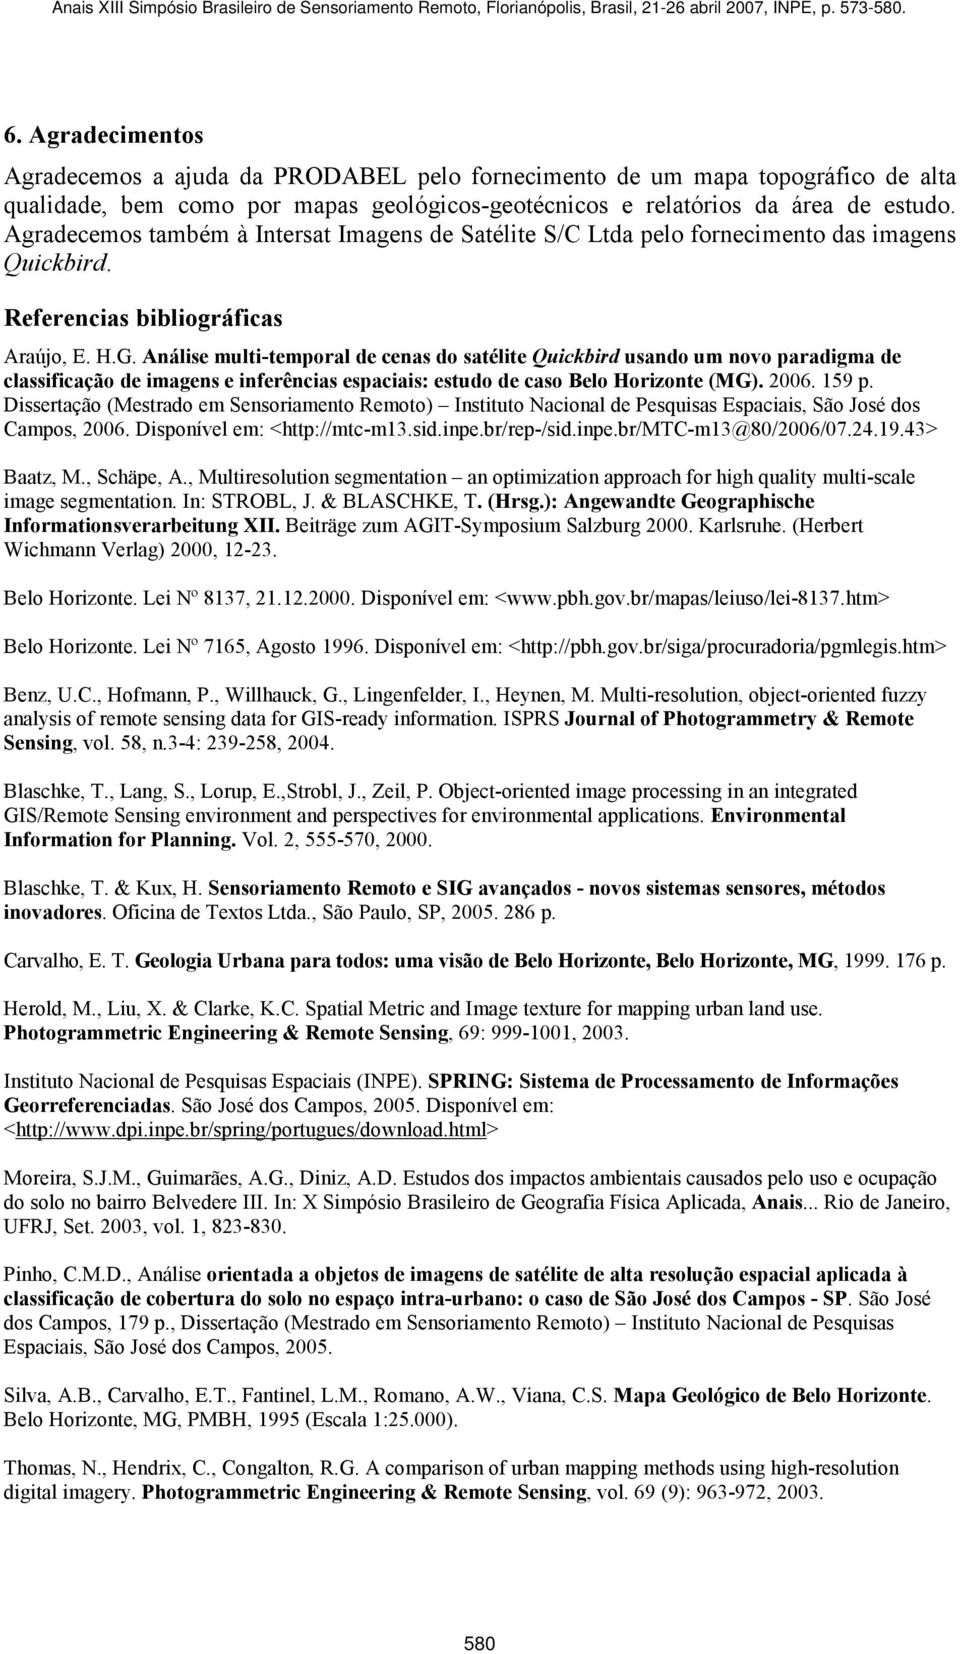 Análise multi-temporal de cenas do satélite Quickbird usando um novo paradigma de classificação de imagens e inferências espaciais: estudo de caso Belo Horizonte (MG). 2006. 159 p.